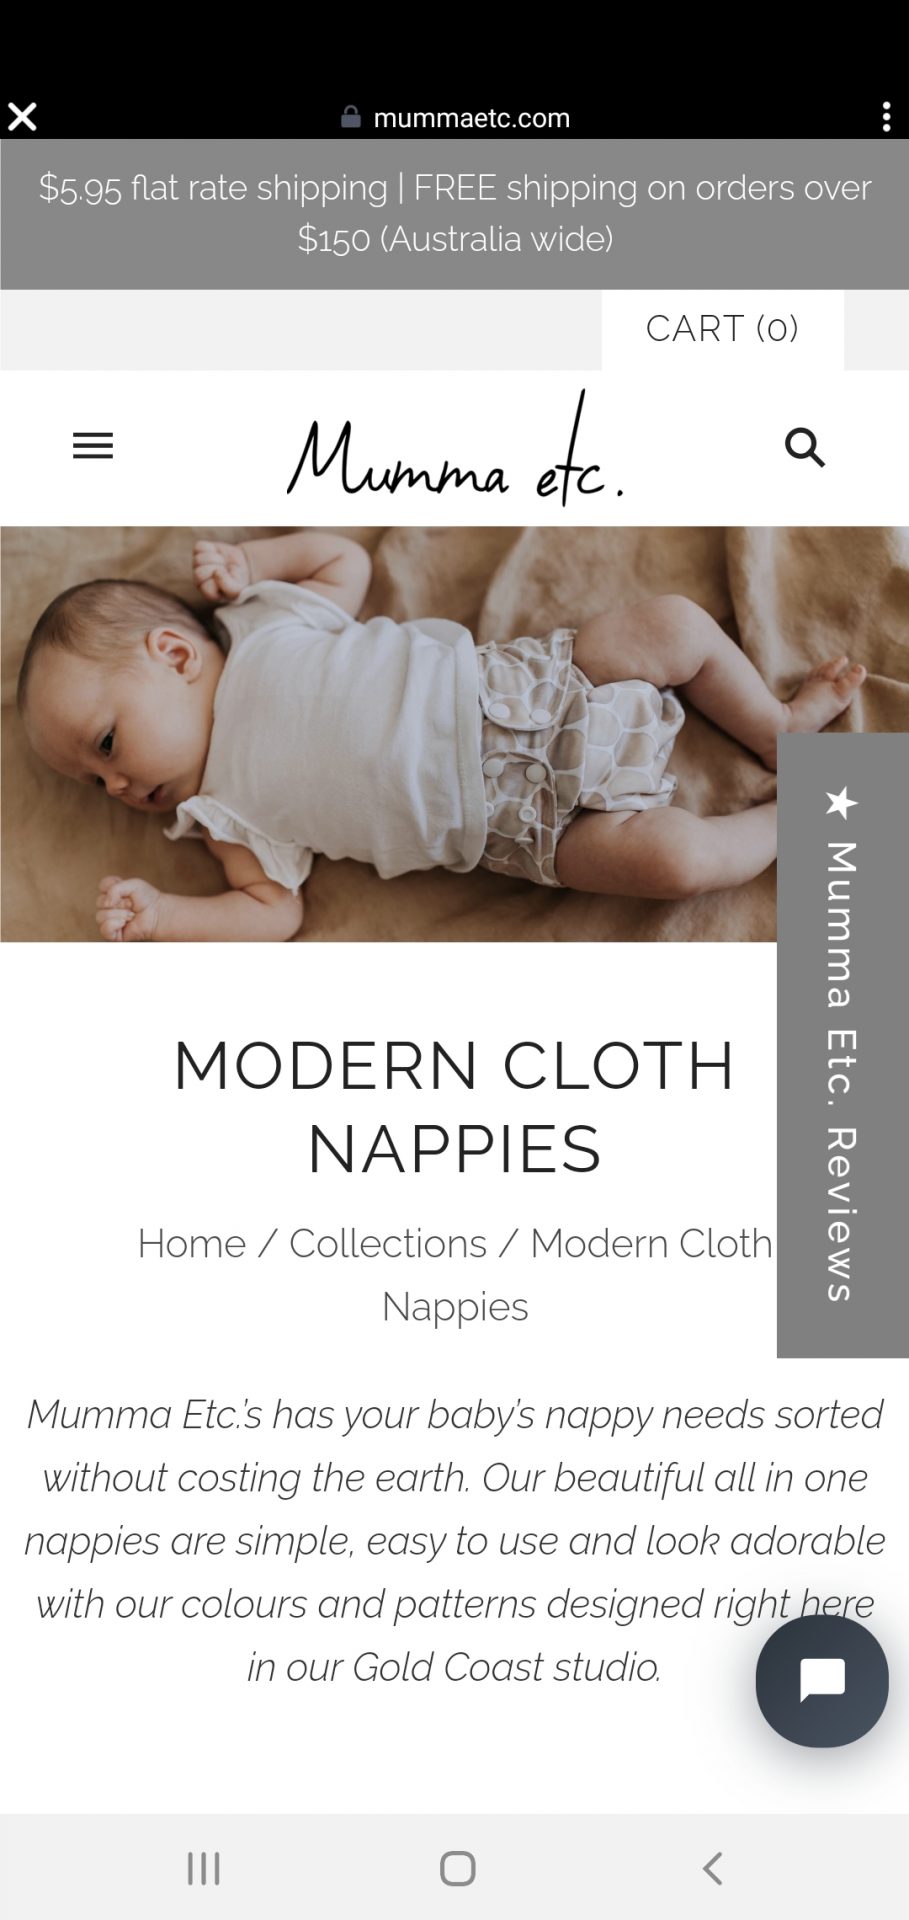 Cloth Nappies